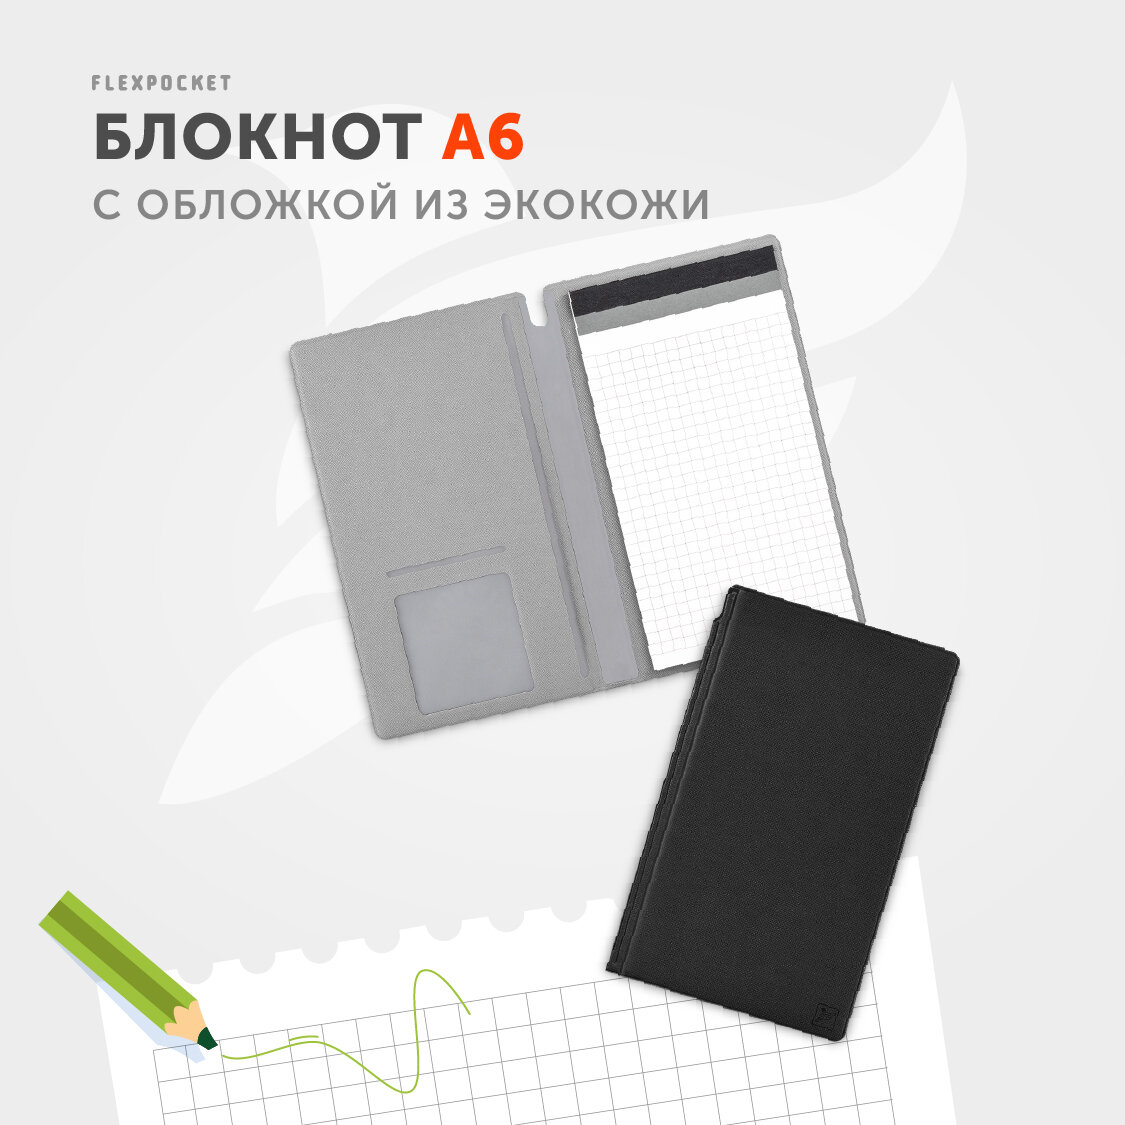 Блокнот-планшет Flexpocket в обложке из экокожи Saffiano, формат А6, цвет Черный